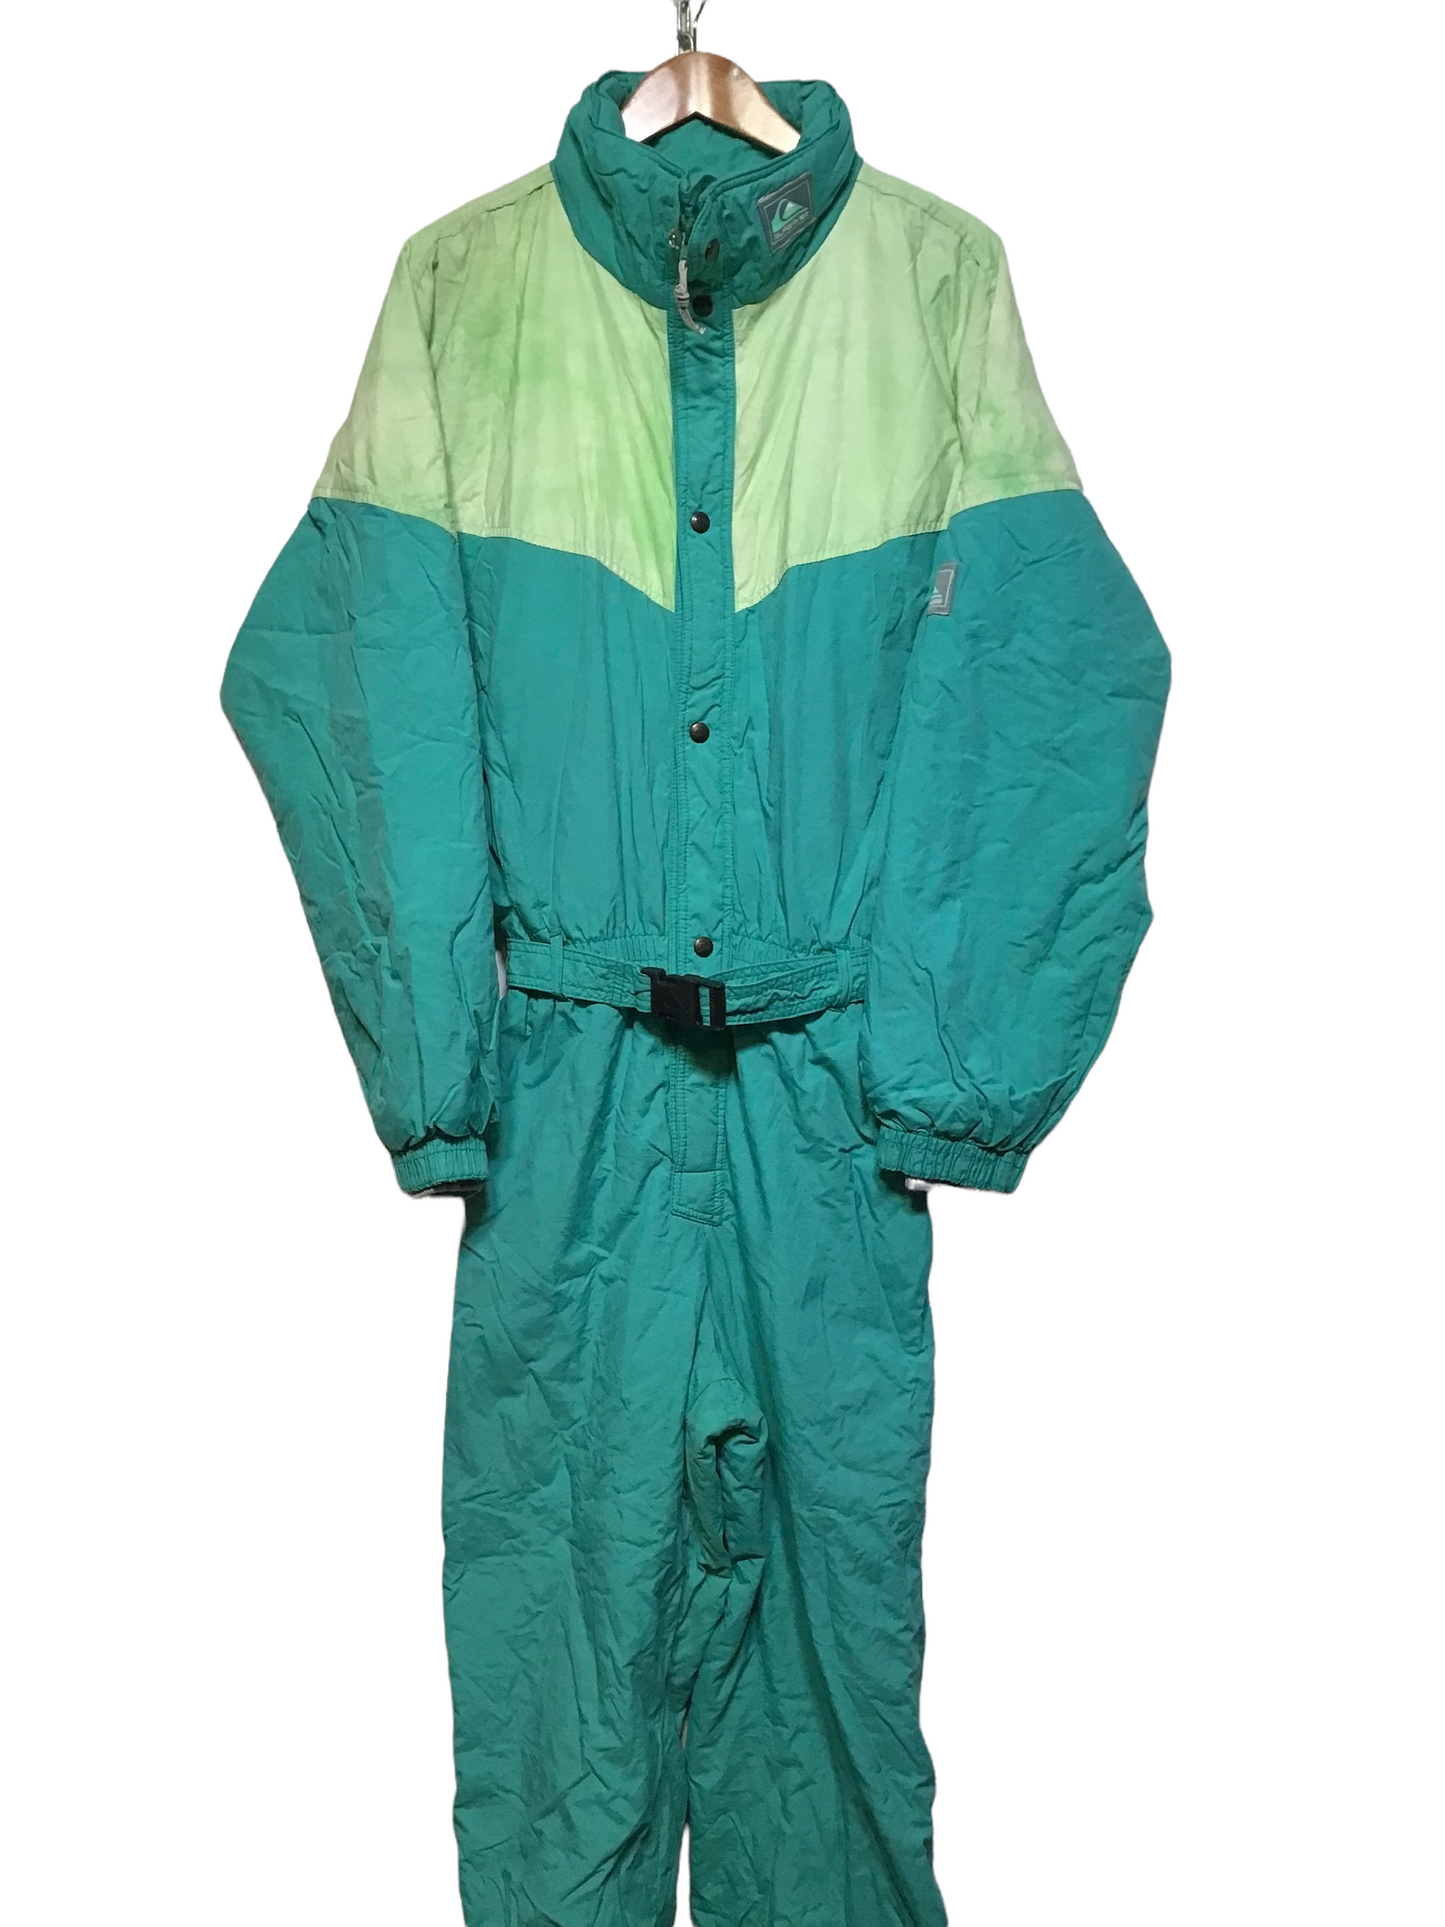 Quicksilver Turquoise Ski Suit (Size XL)